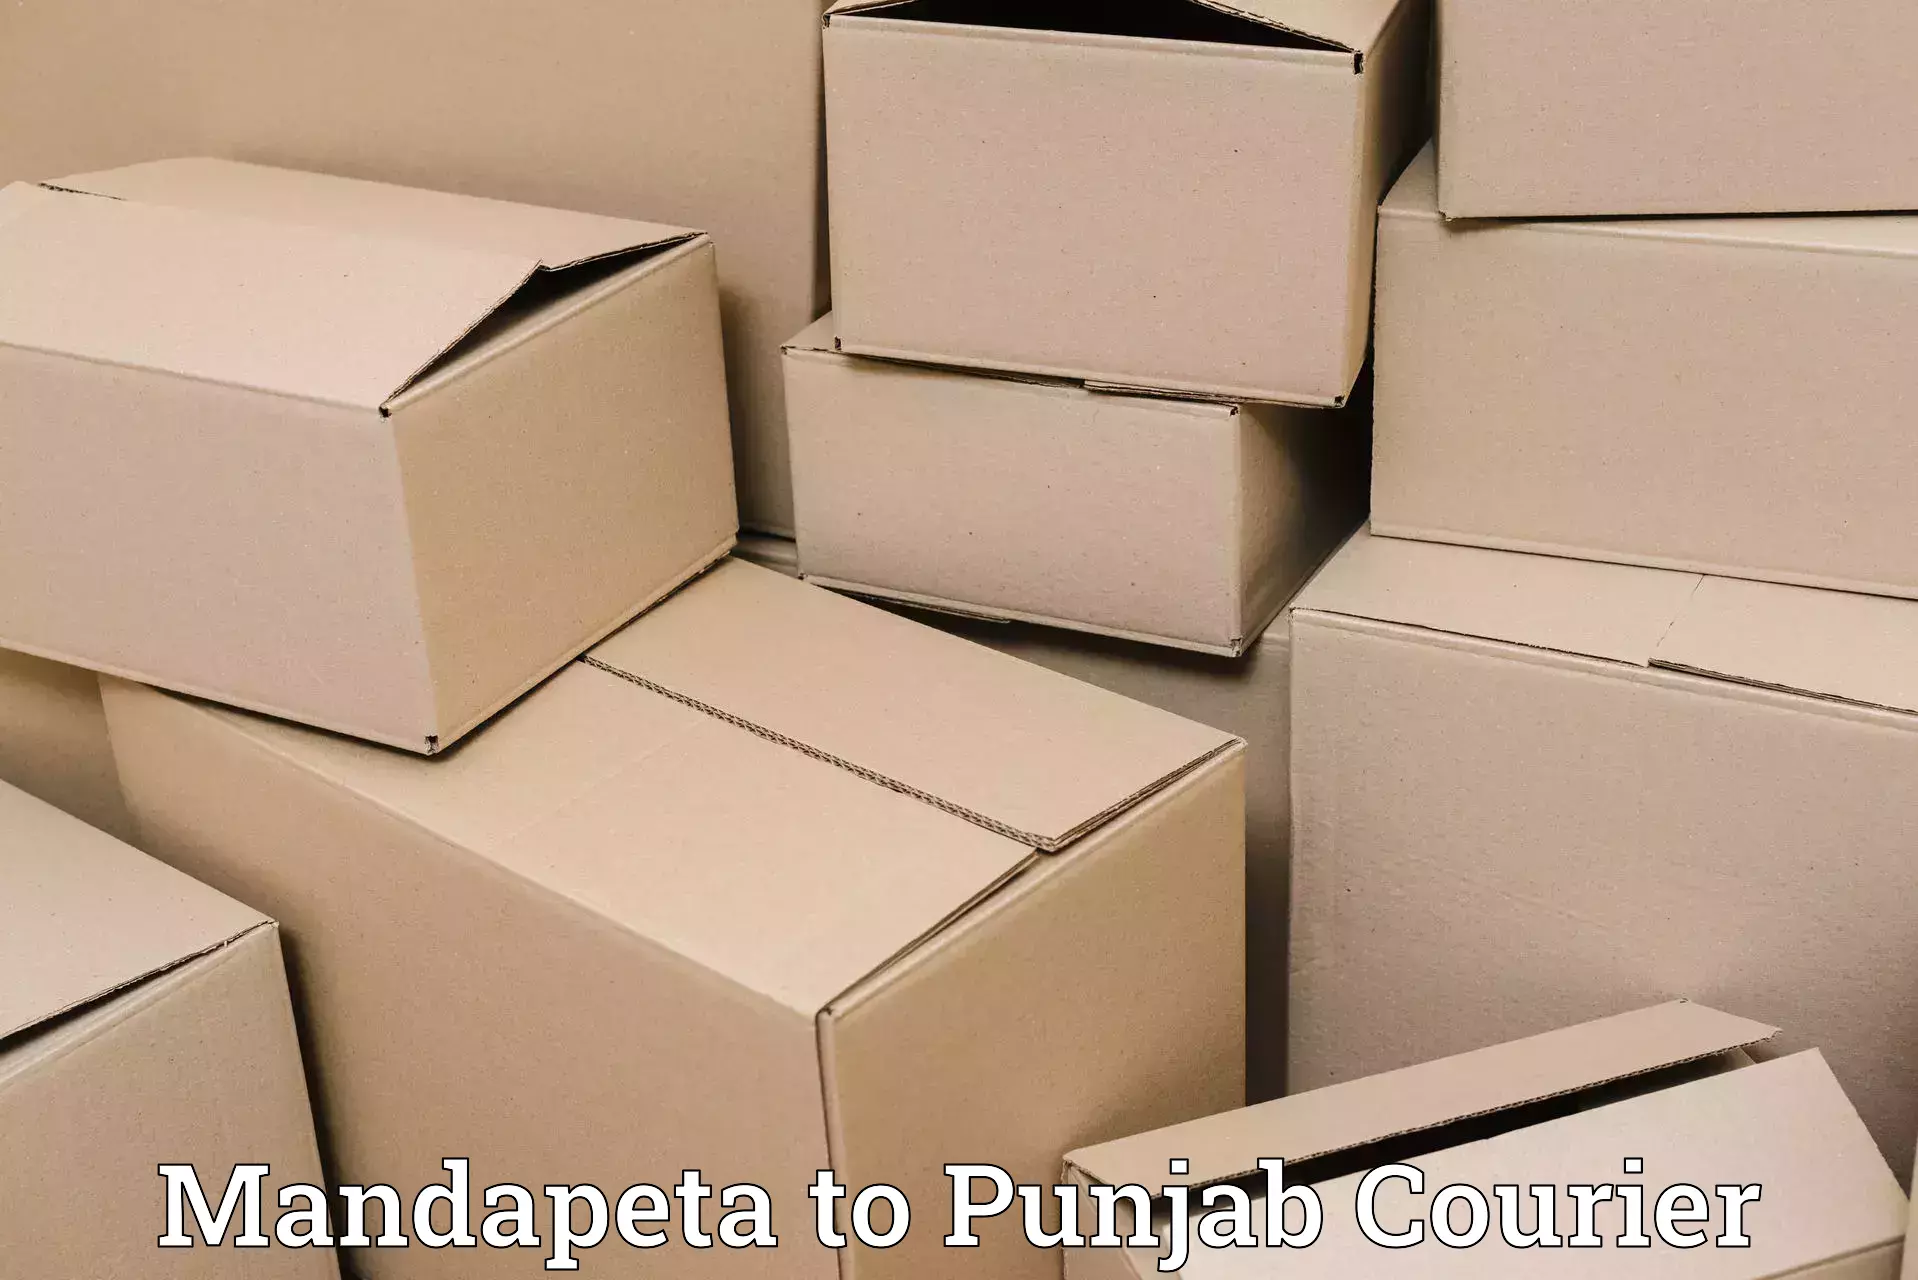 Urgent courier needs Mandapeta to Amritsar